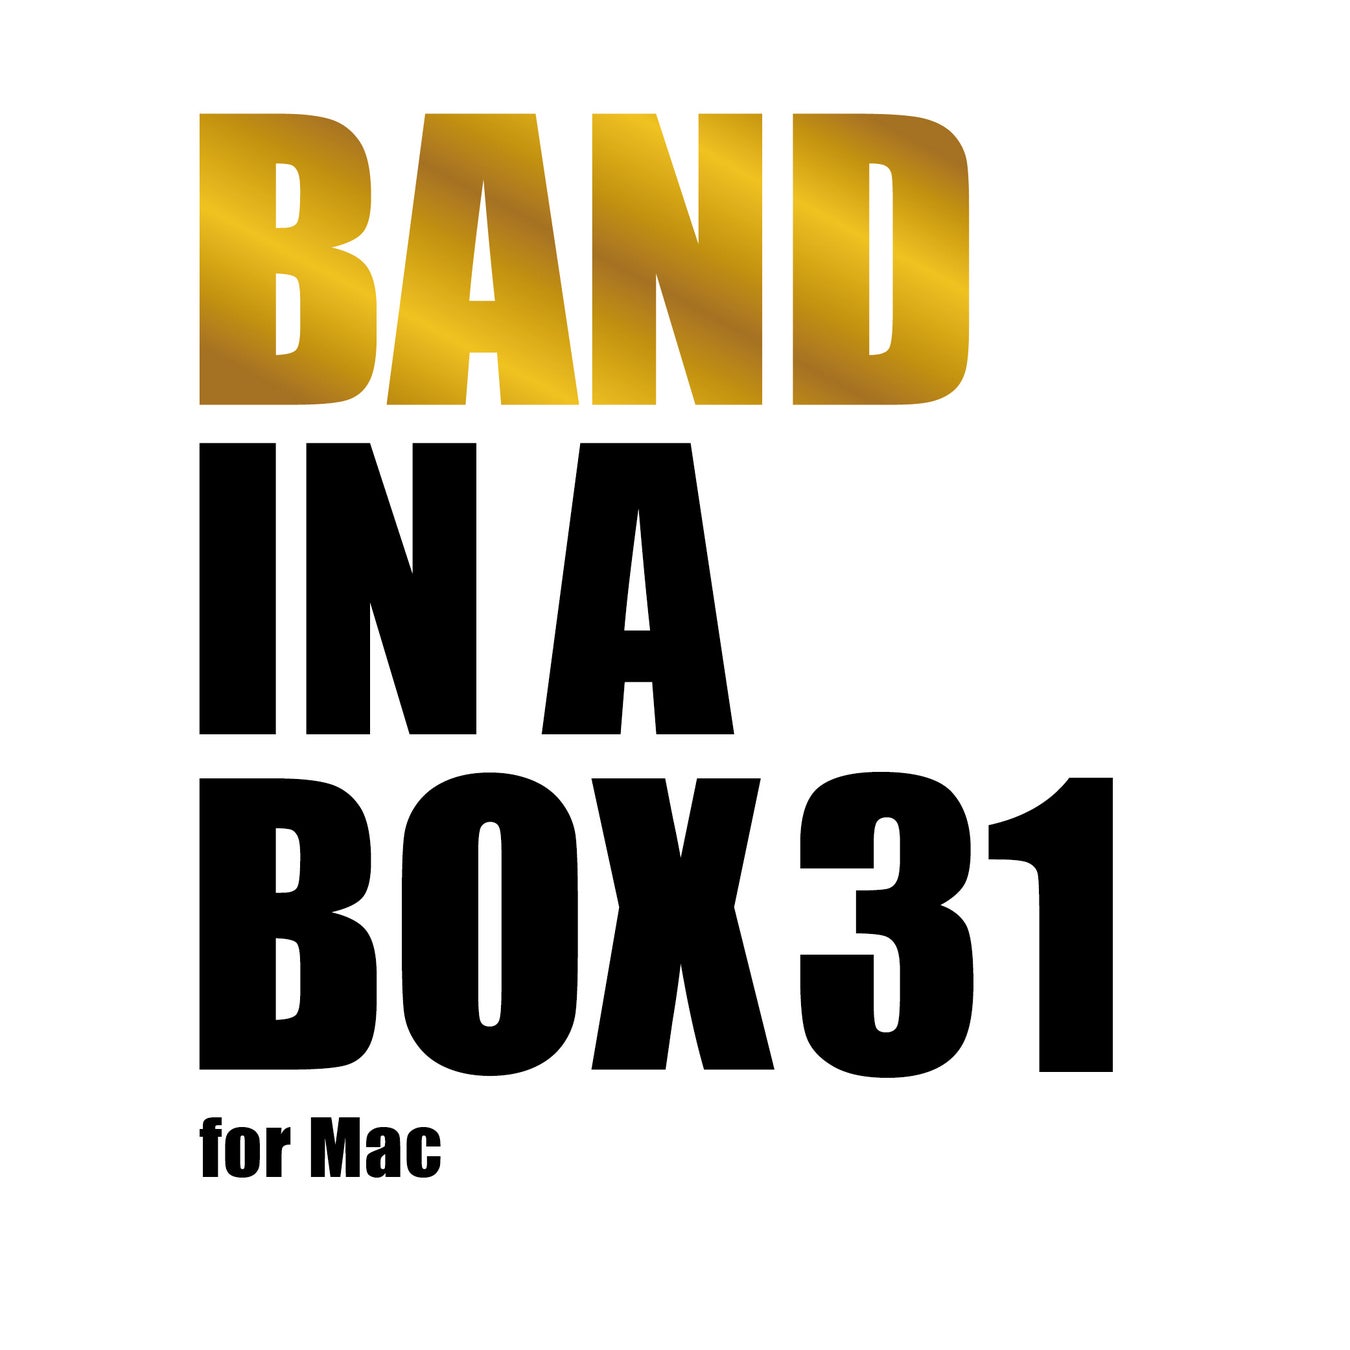 3ステップのかんたん操作で作曲可能な自動作曲ソフト『Band-in-a-Box 31 for Windows』『Band-in-a-Box 31 fo...